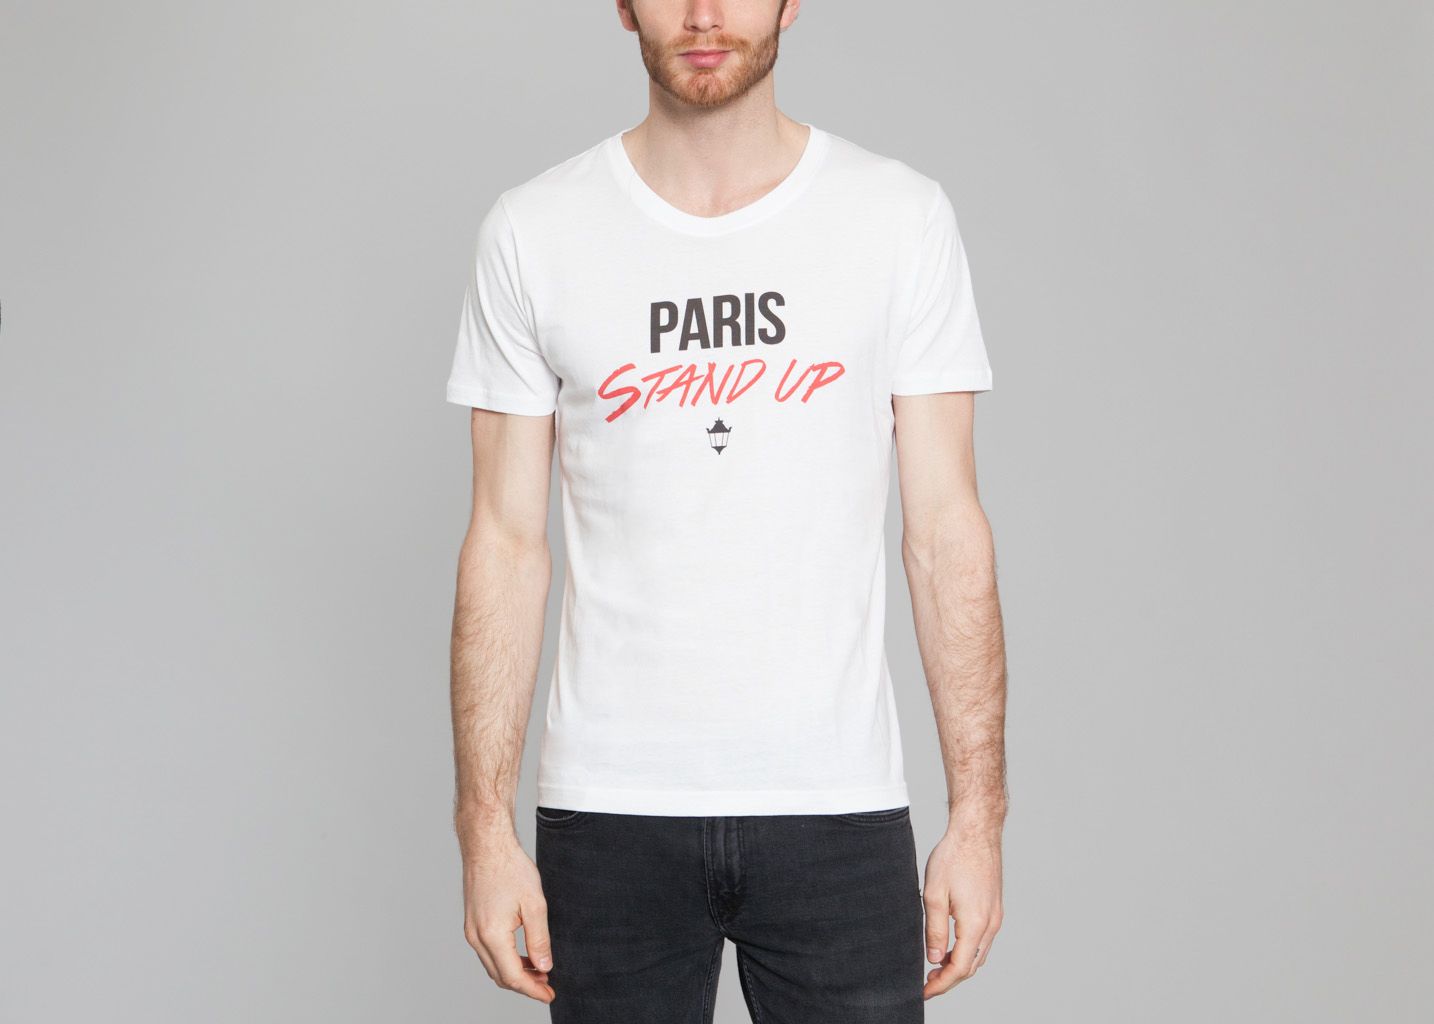 Paris StandUp Tshirt - Nous Sommes à Paris